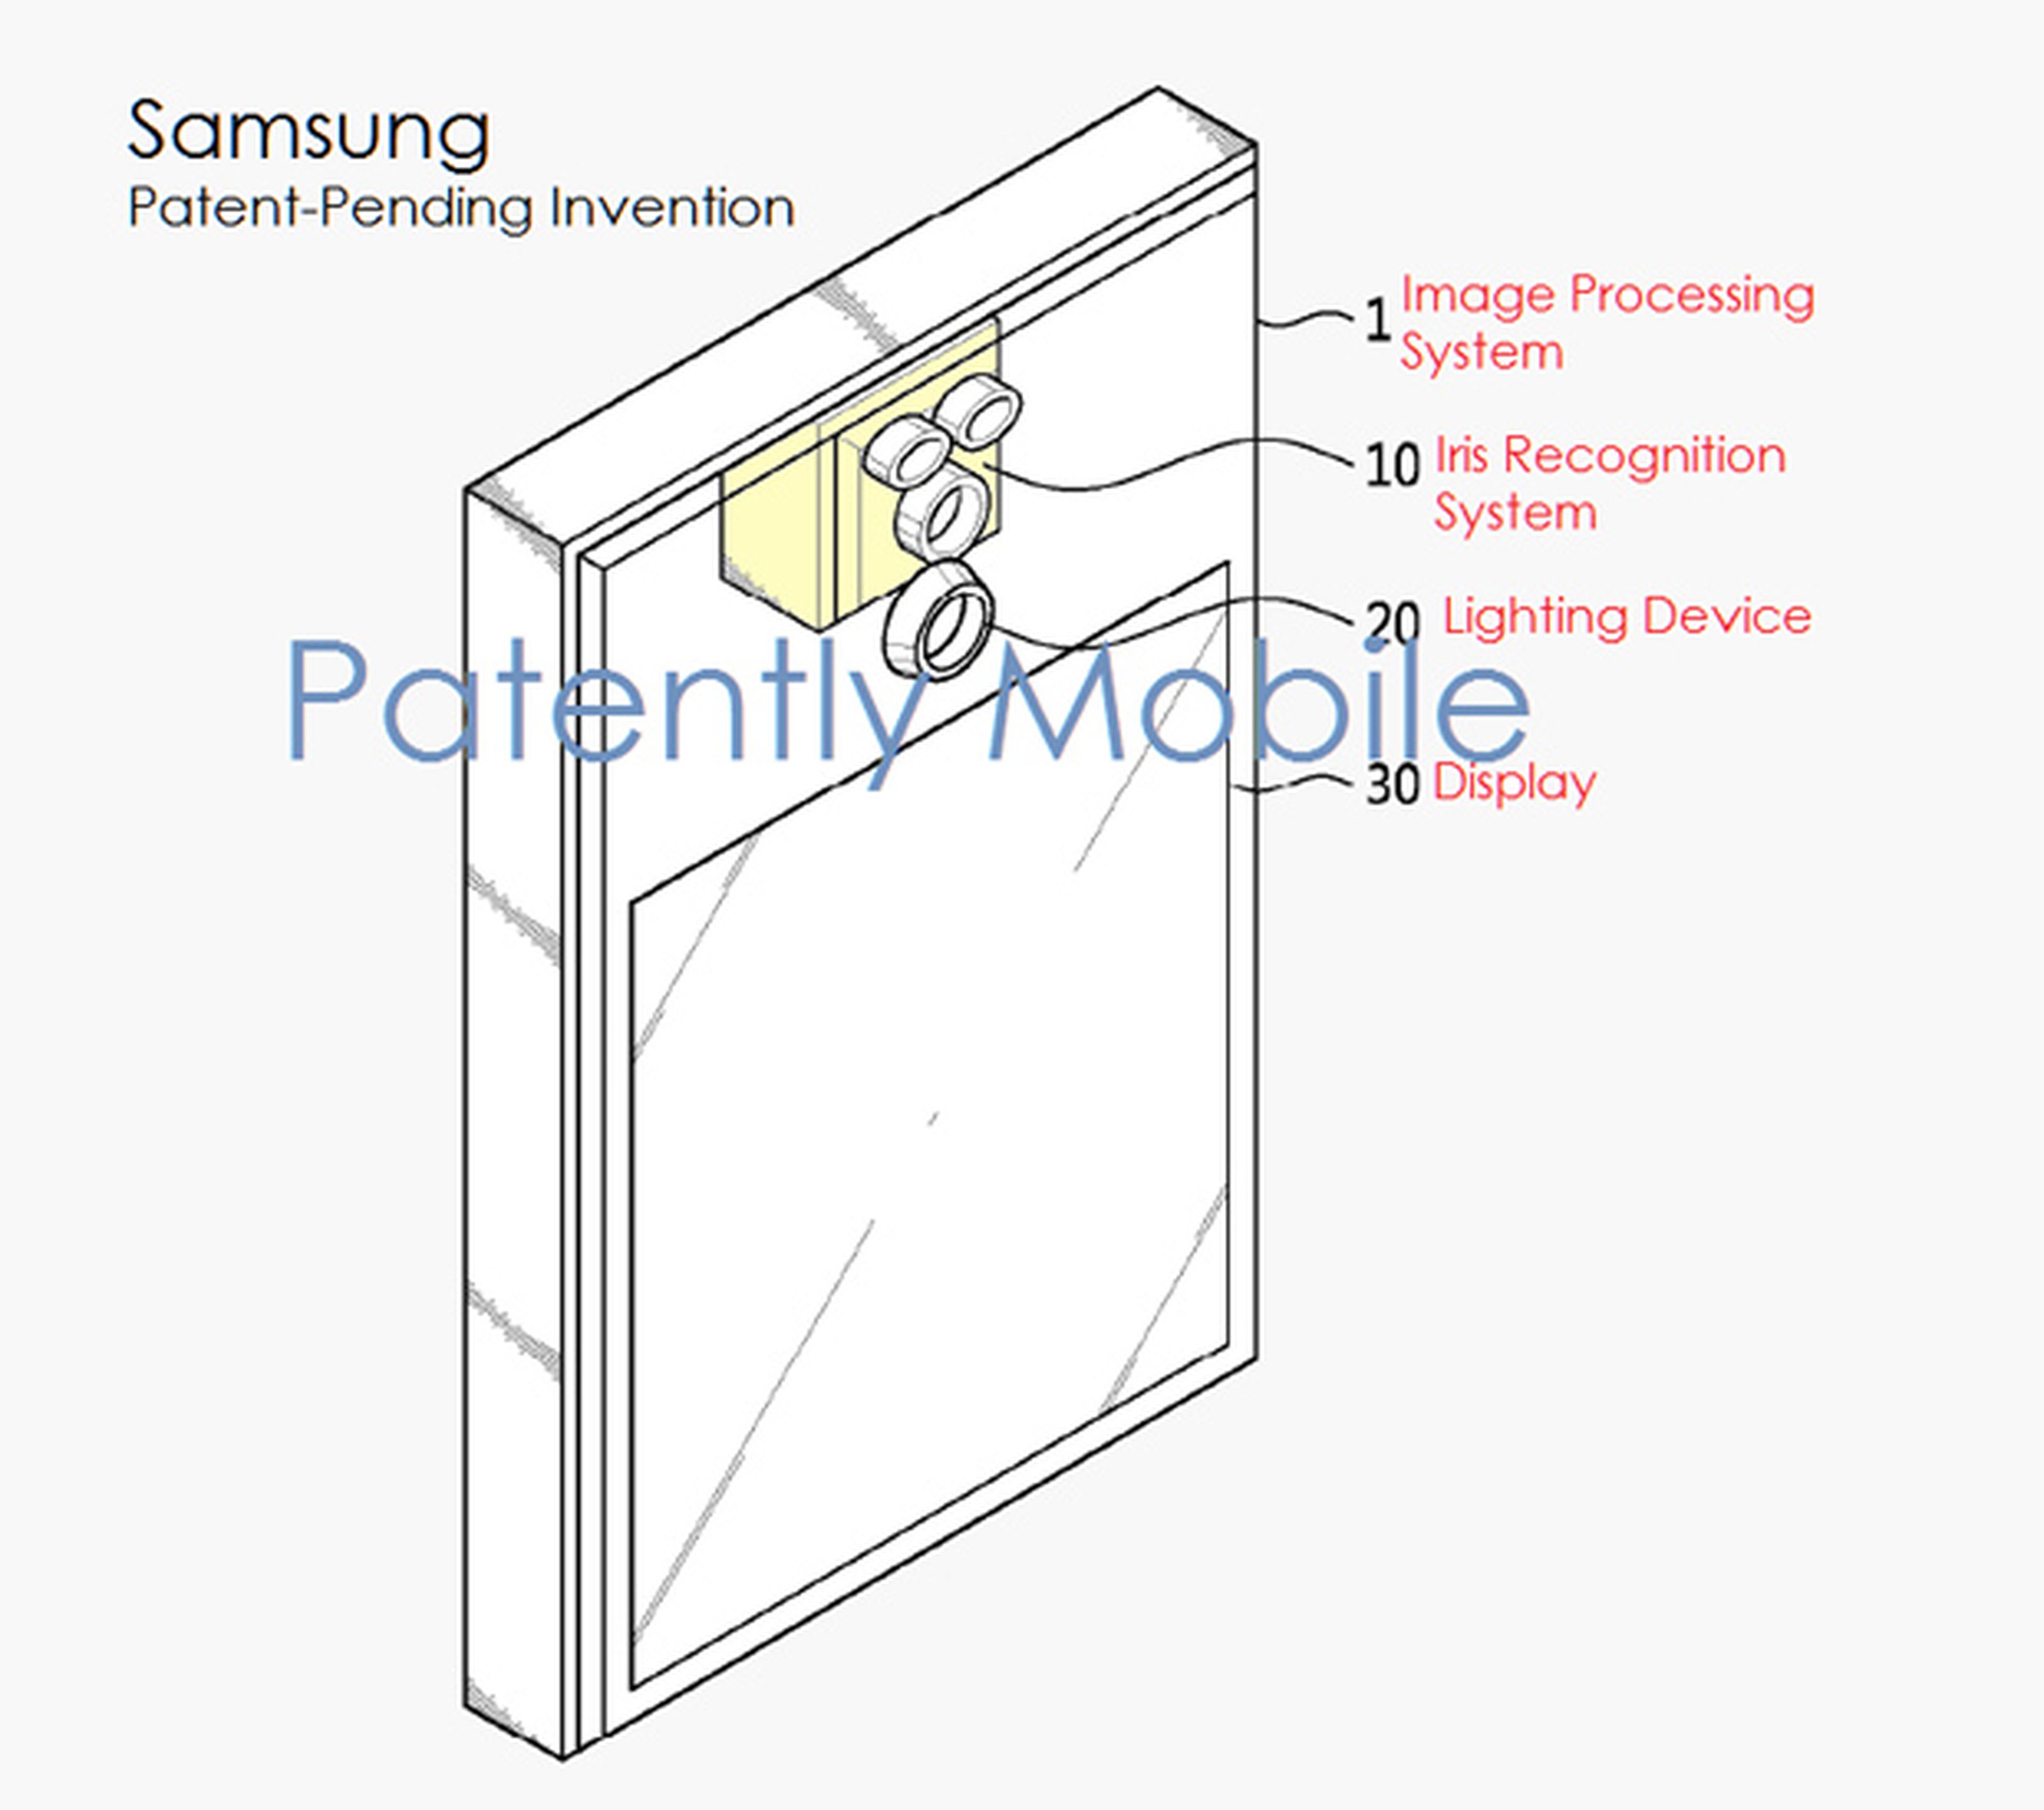 Samsung Galaxy Note 7 patente reconocimiento iris